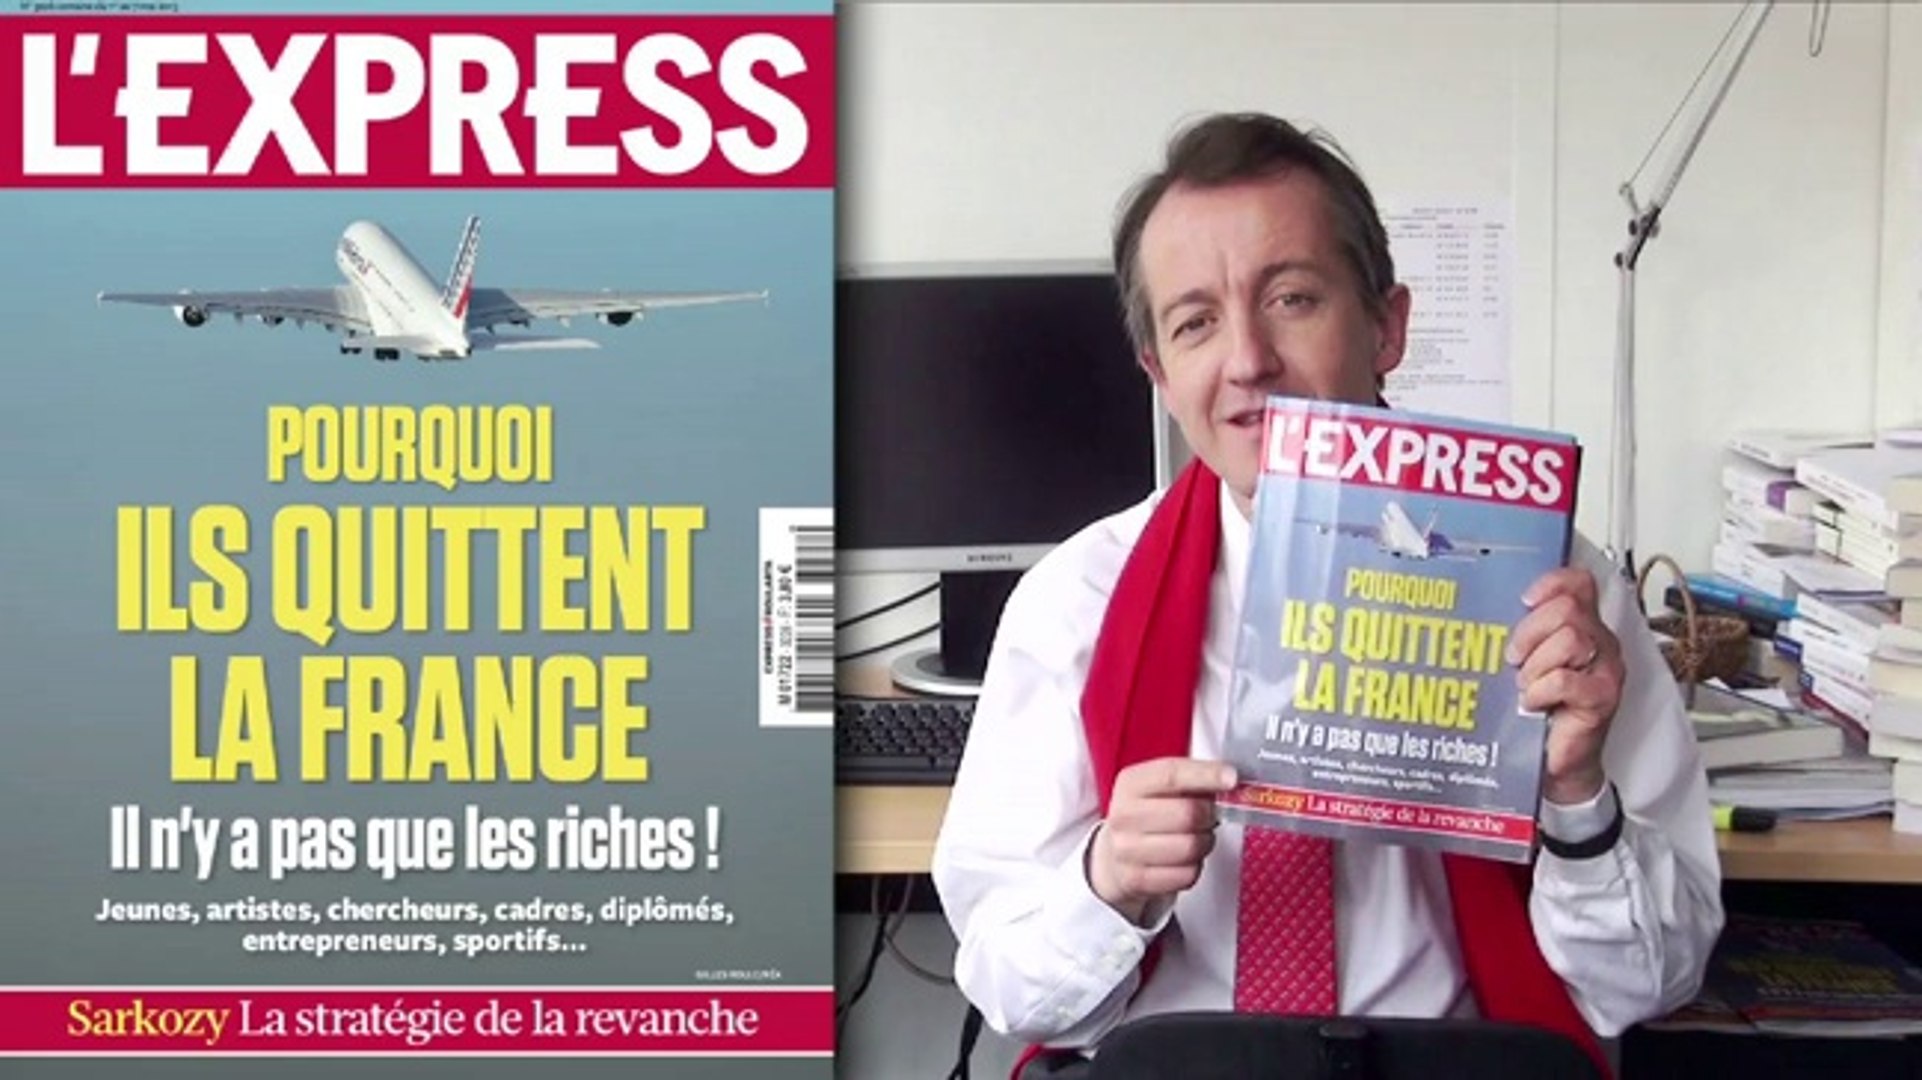 La couverture de L'Express cette semaine: pourquoi ils quittent la France?  - Vidéo Dailymotion